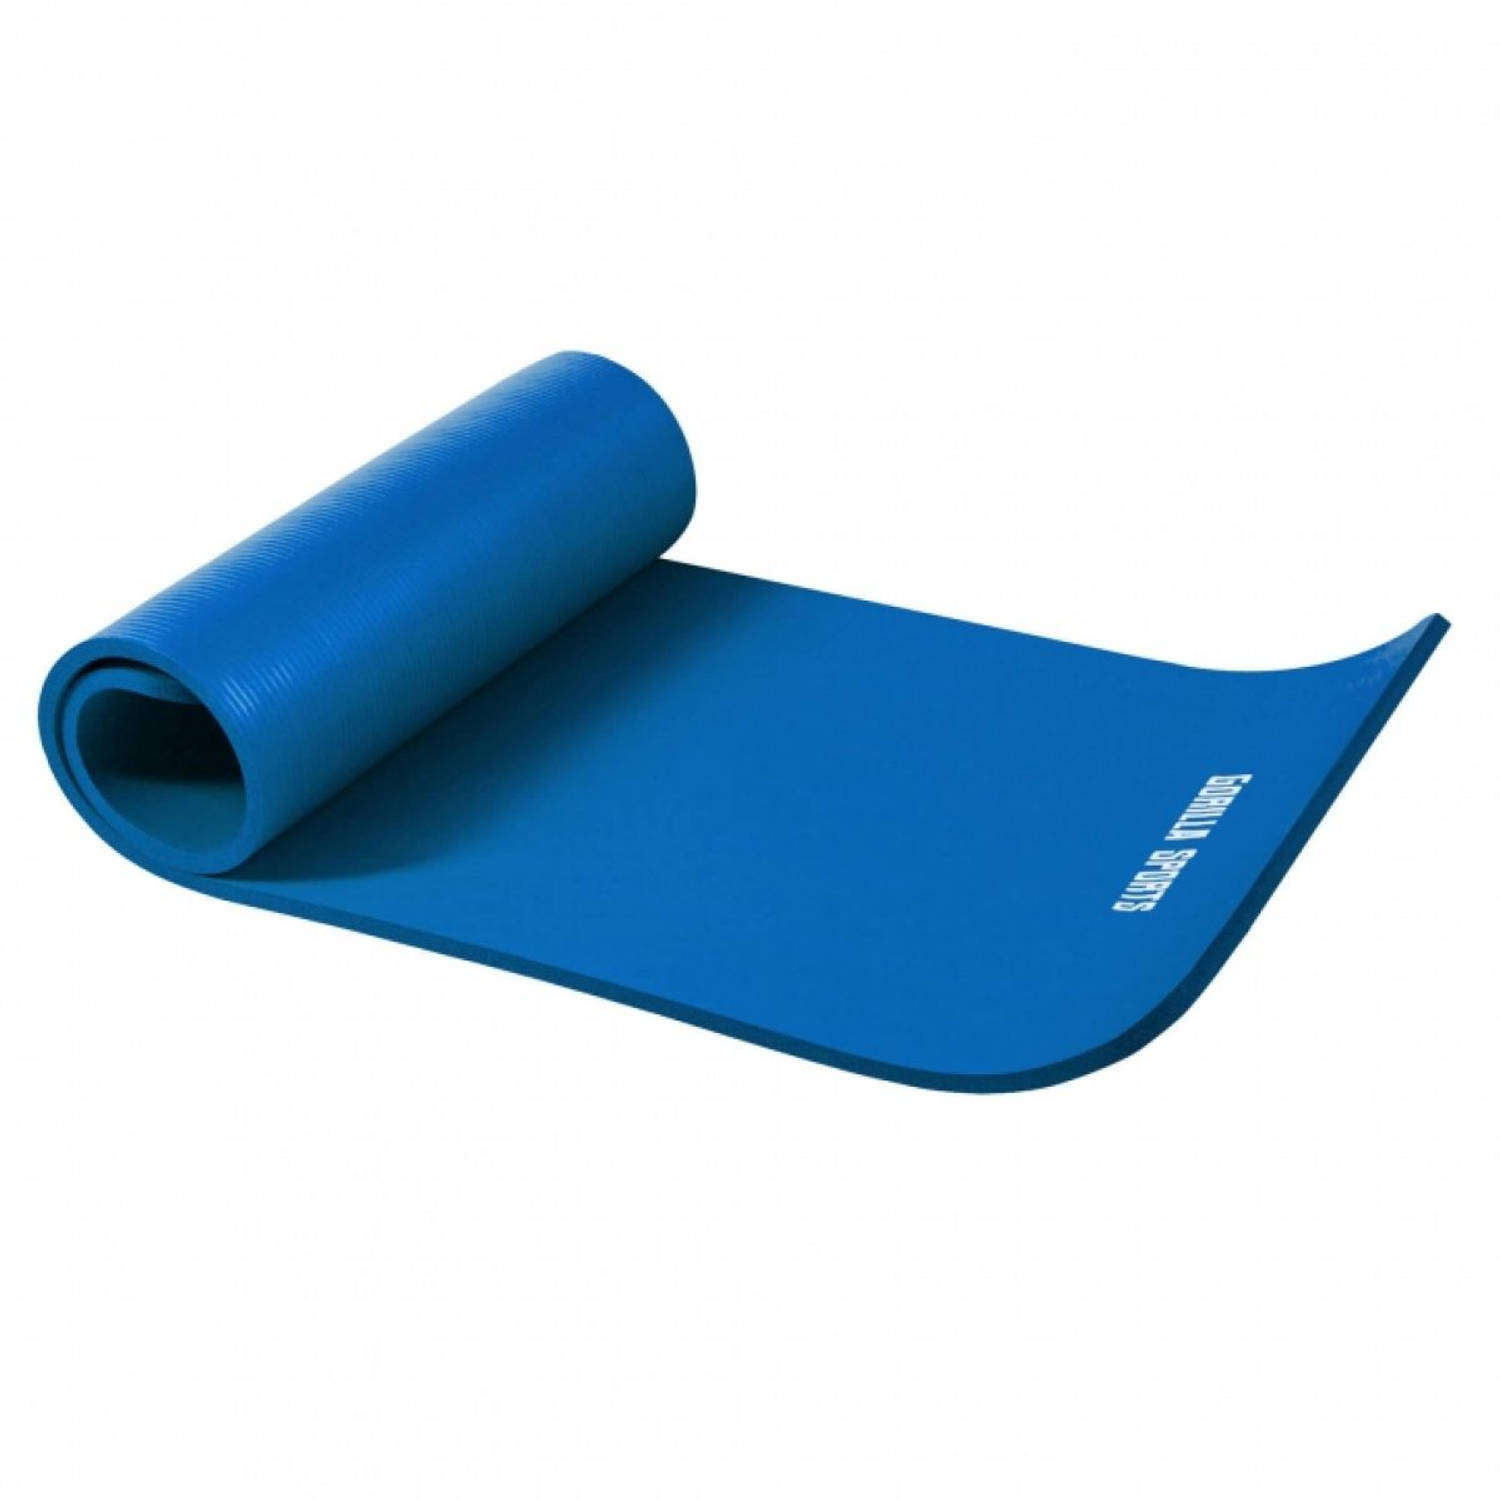 Yogamat Deluxe (190 x 60 x 1,5 cm) royal blue